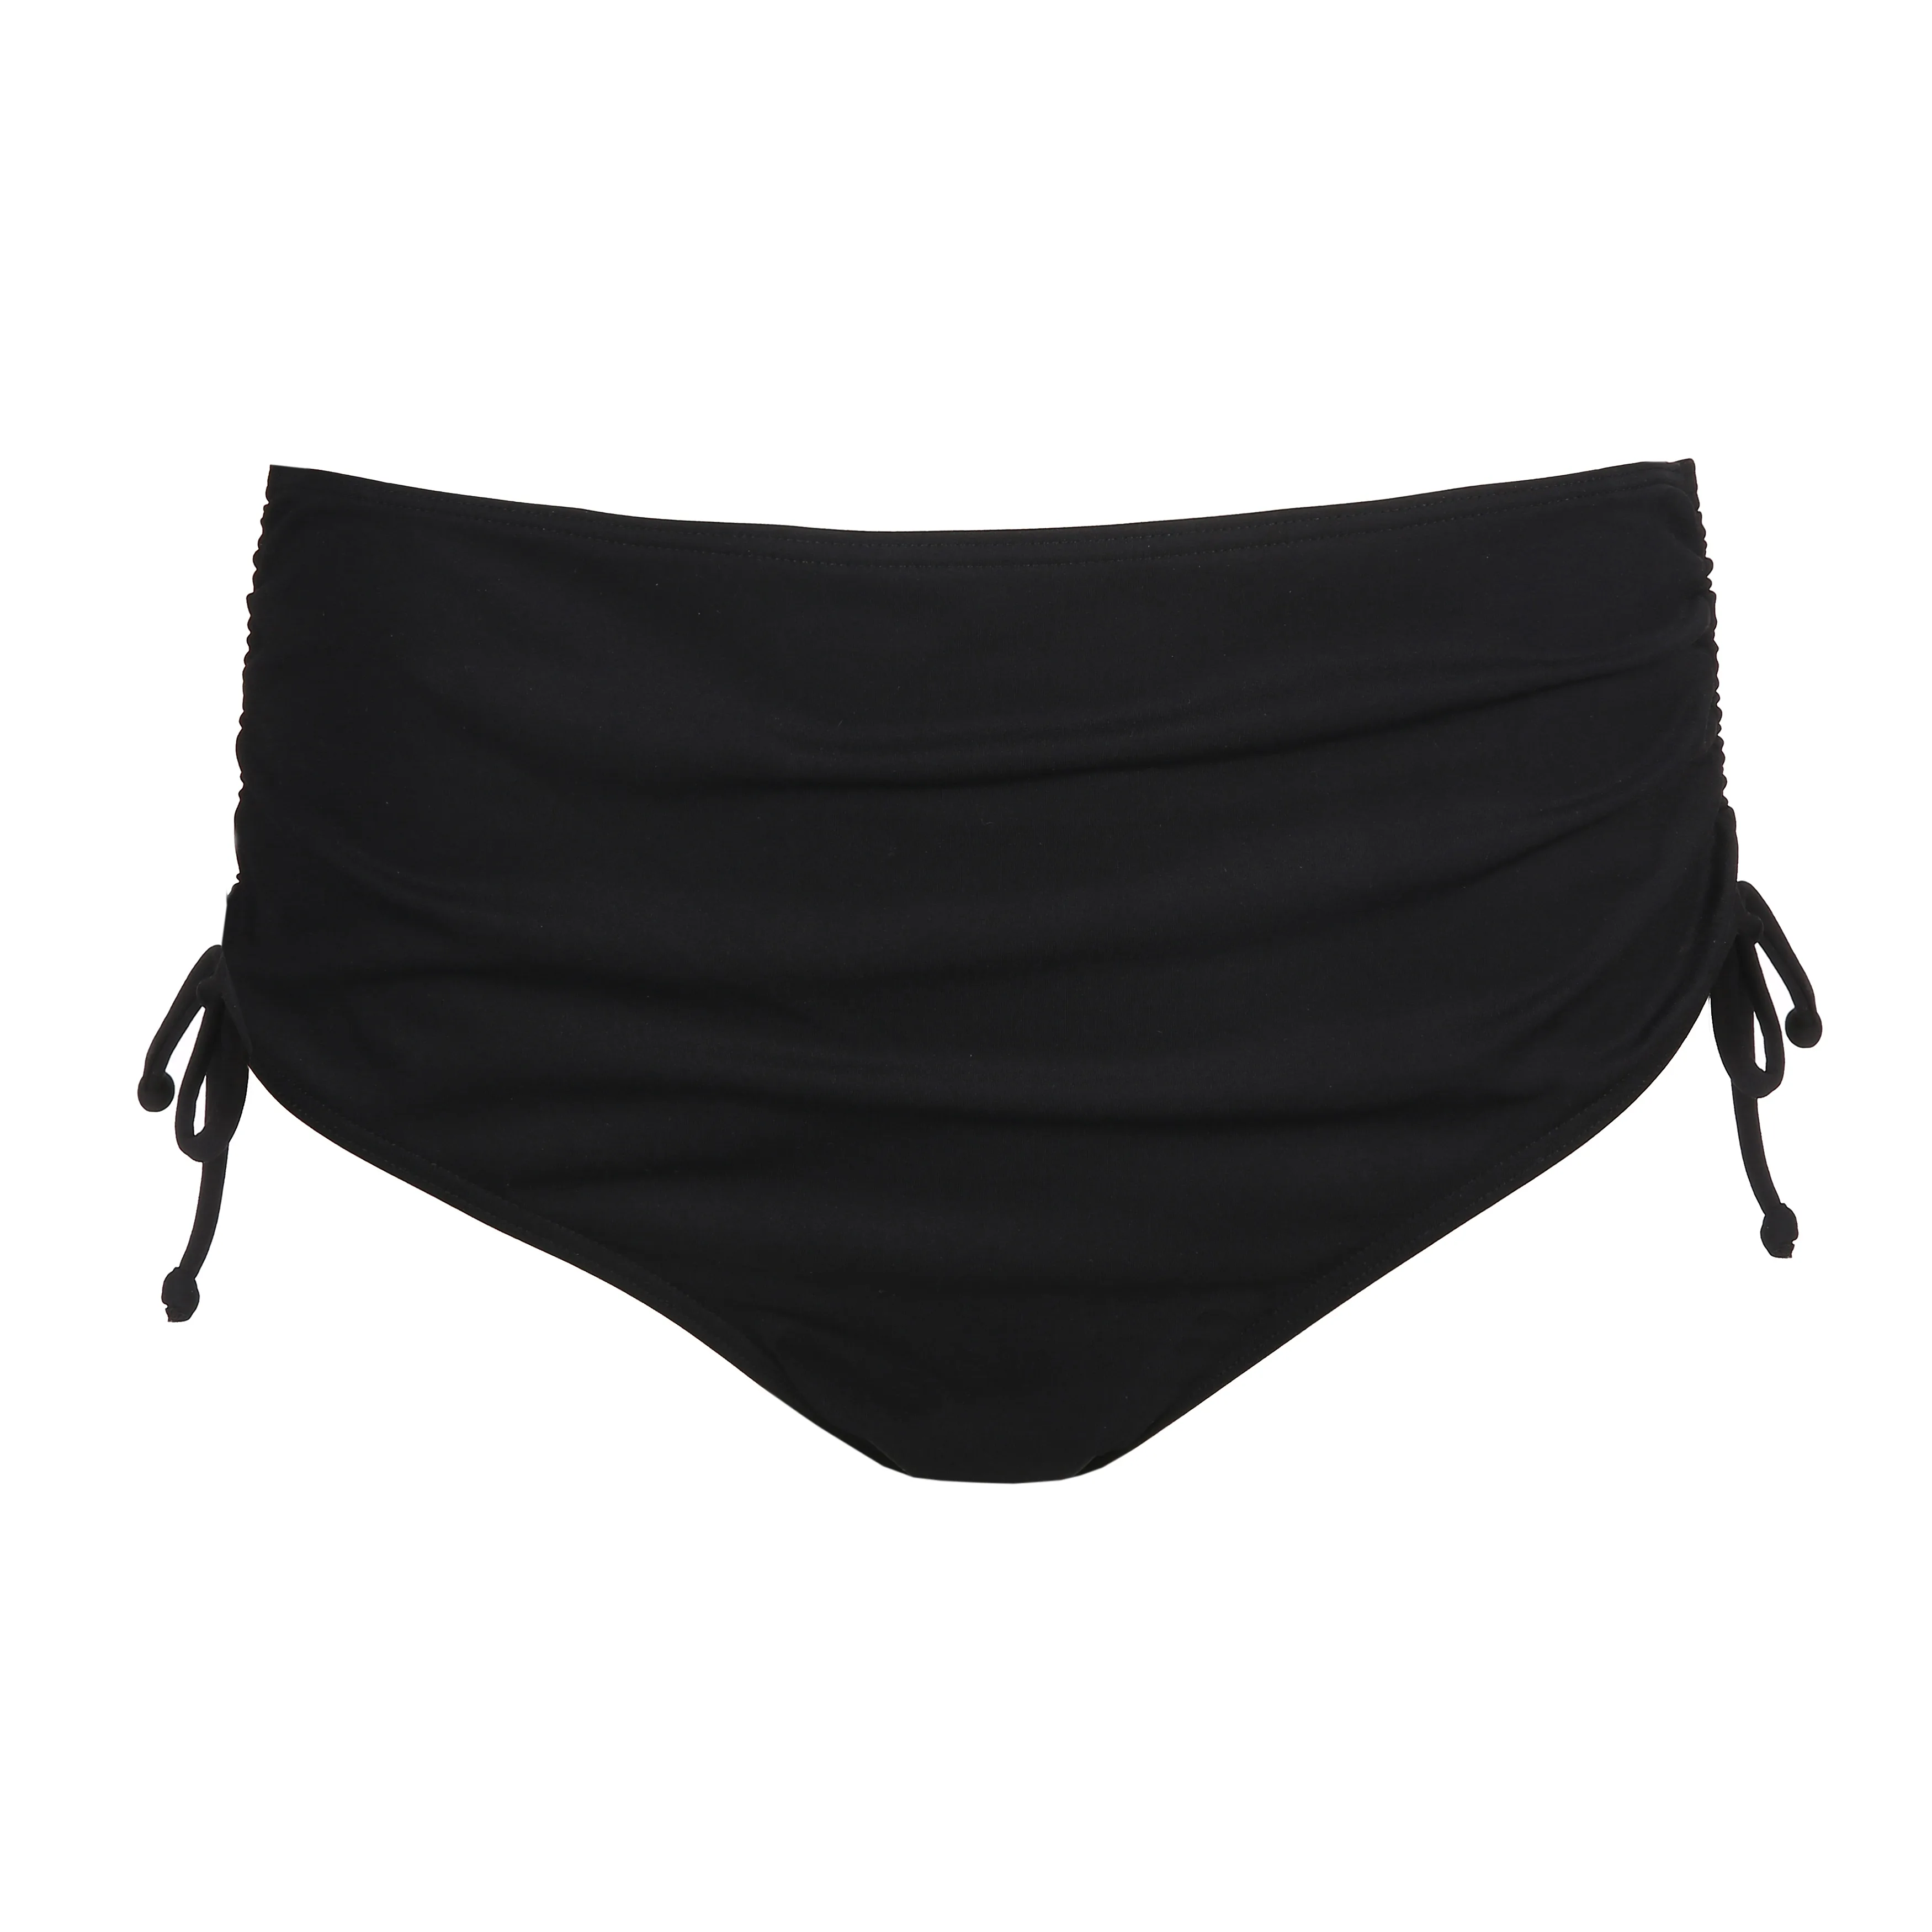 PrimaDonna Swim HOLIDAY Black plunge bikini top remov. pads